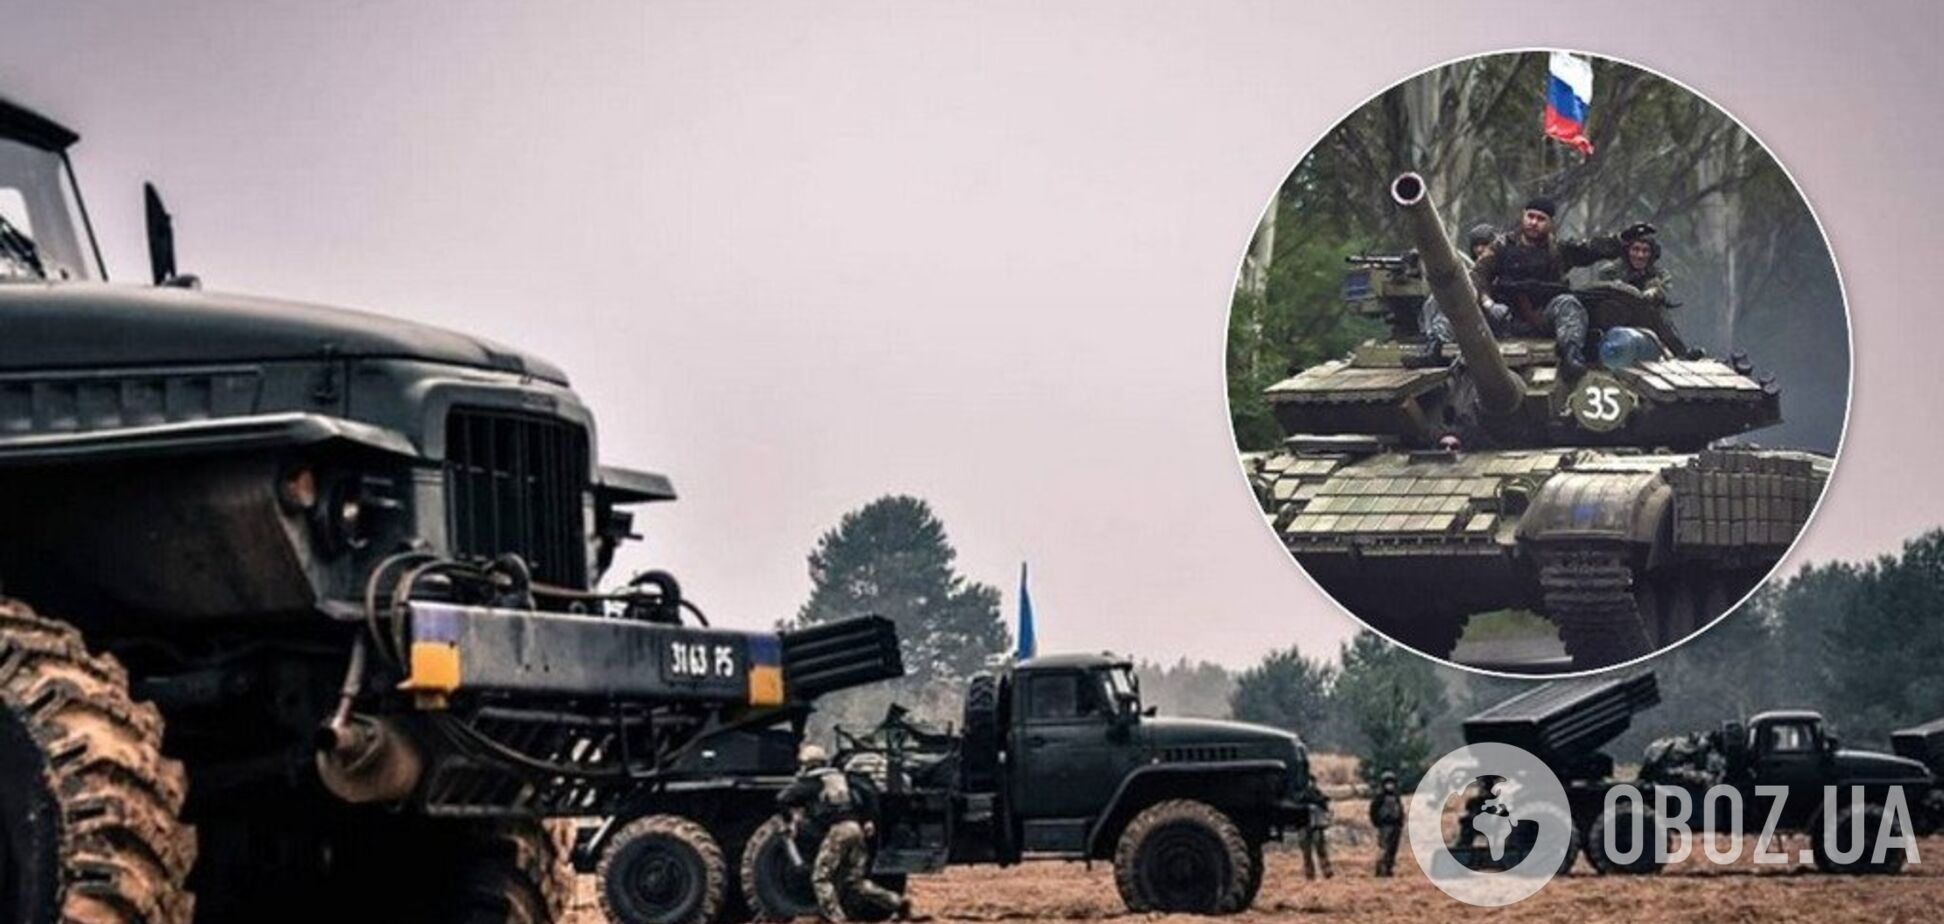 'Это всколыхнет Украину': генерал заявил об опасности масштабного разведения сил